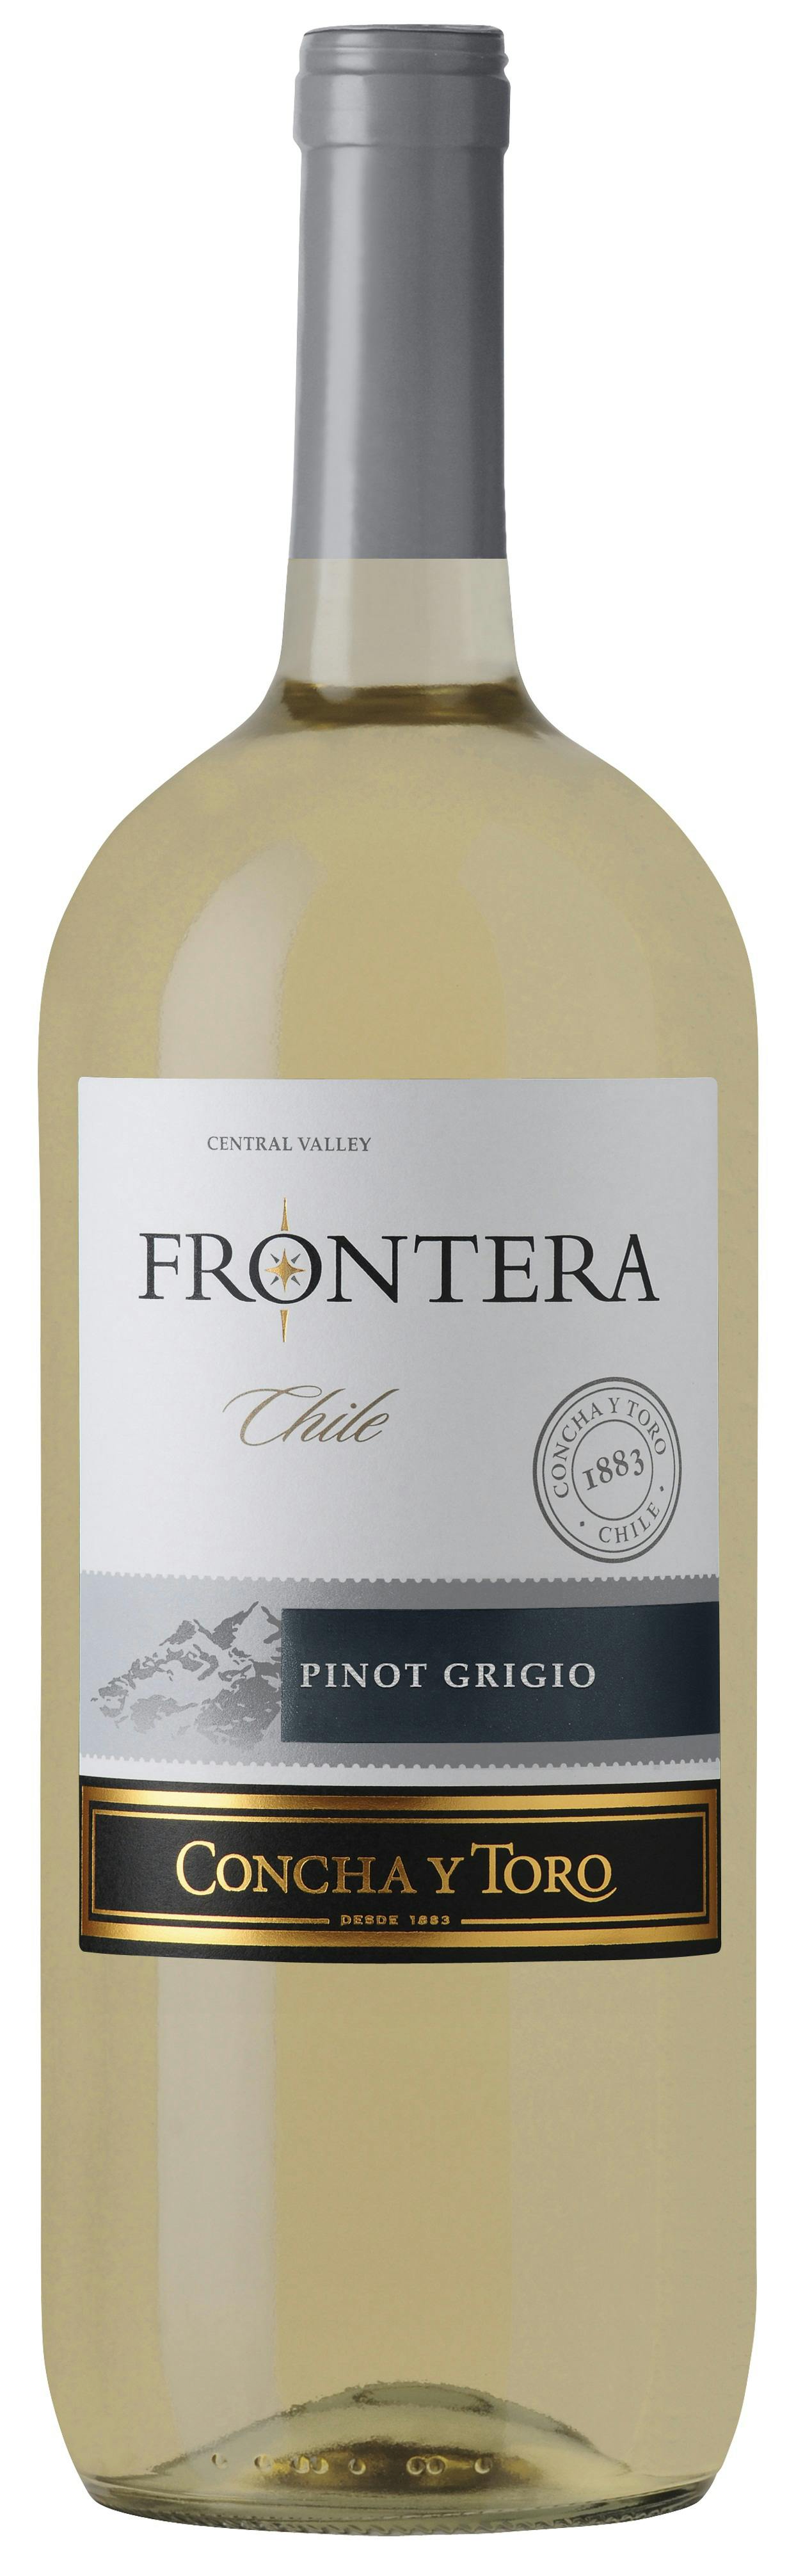 Wine - Chile - Vine Republic